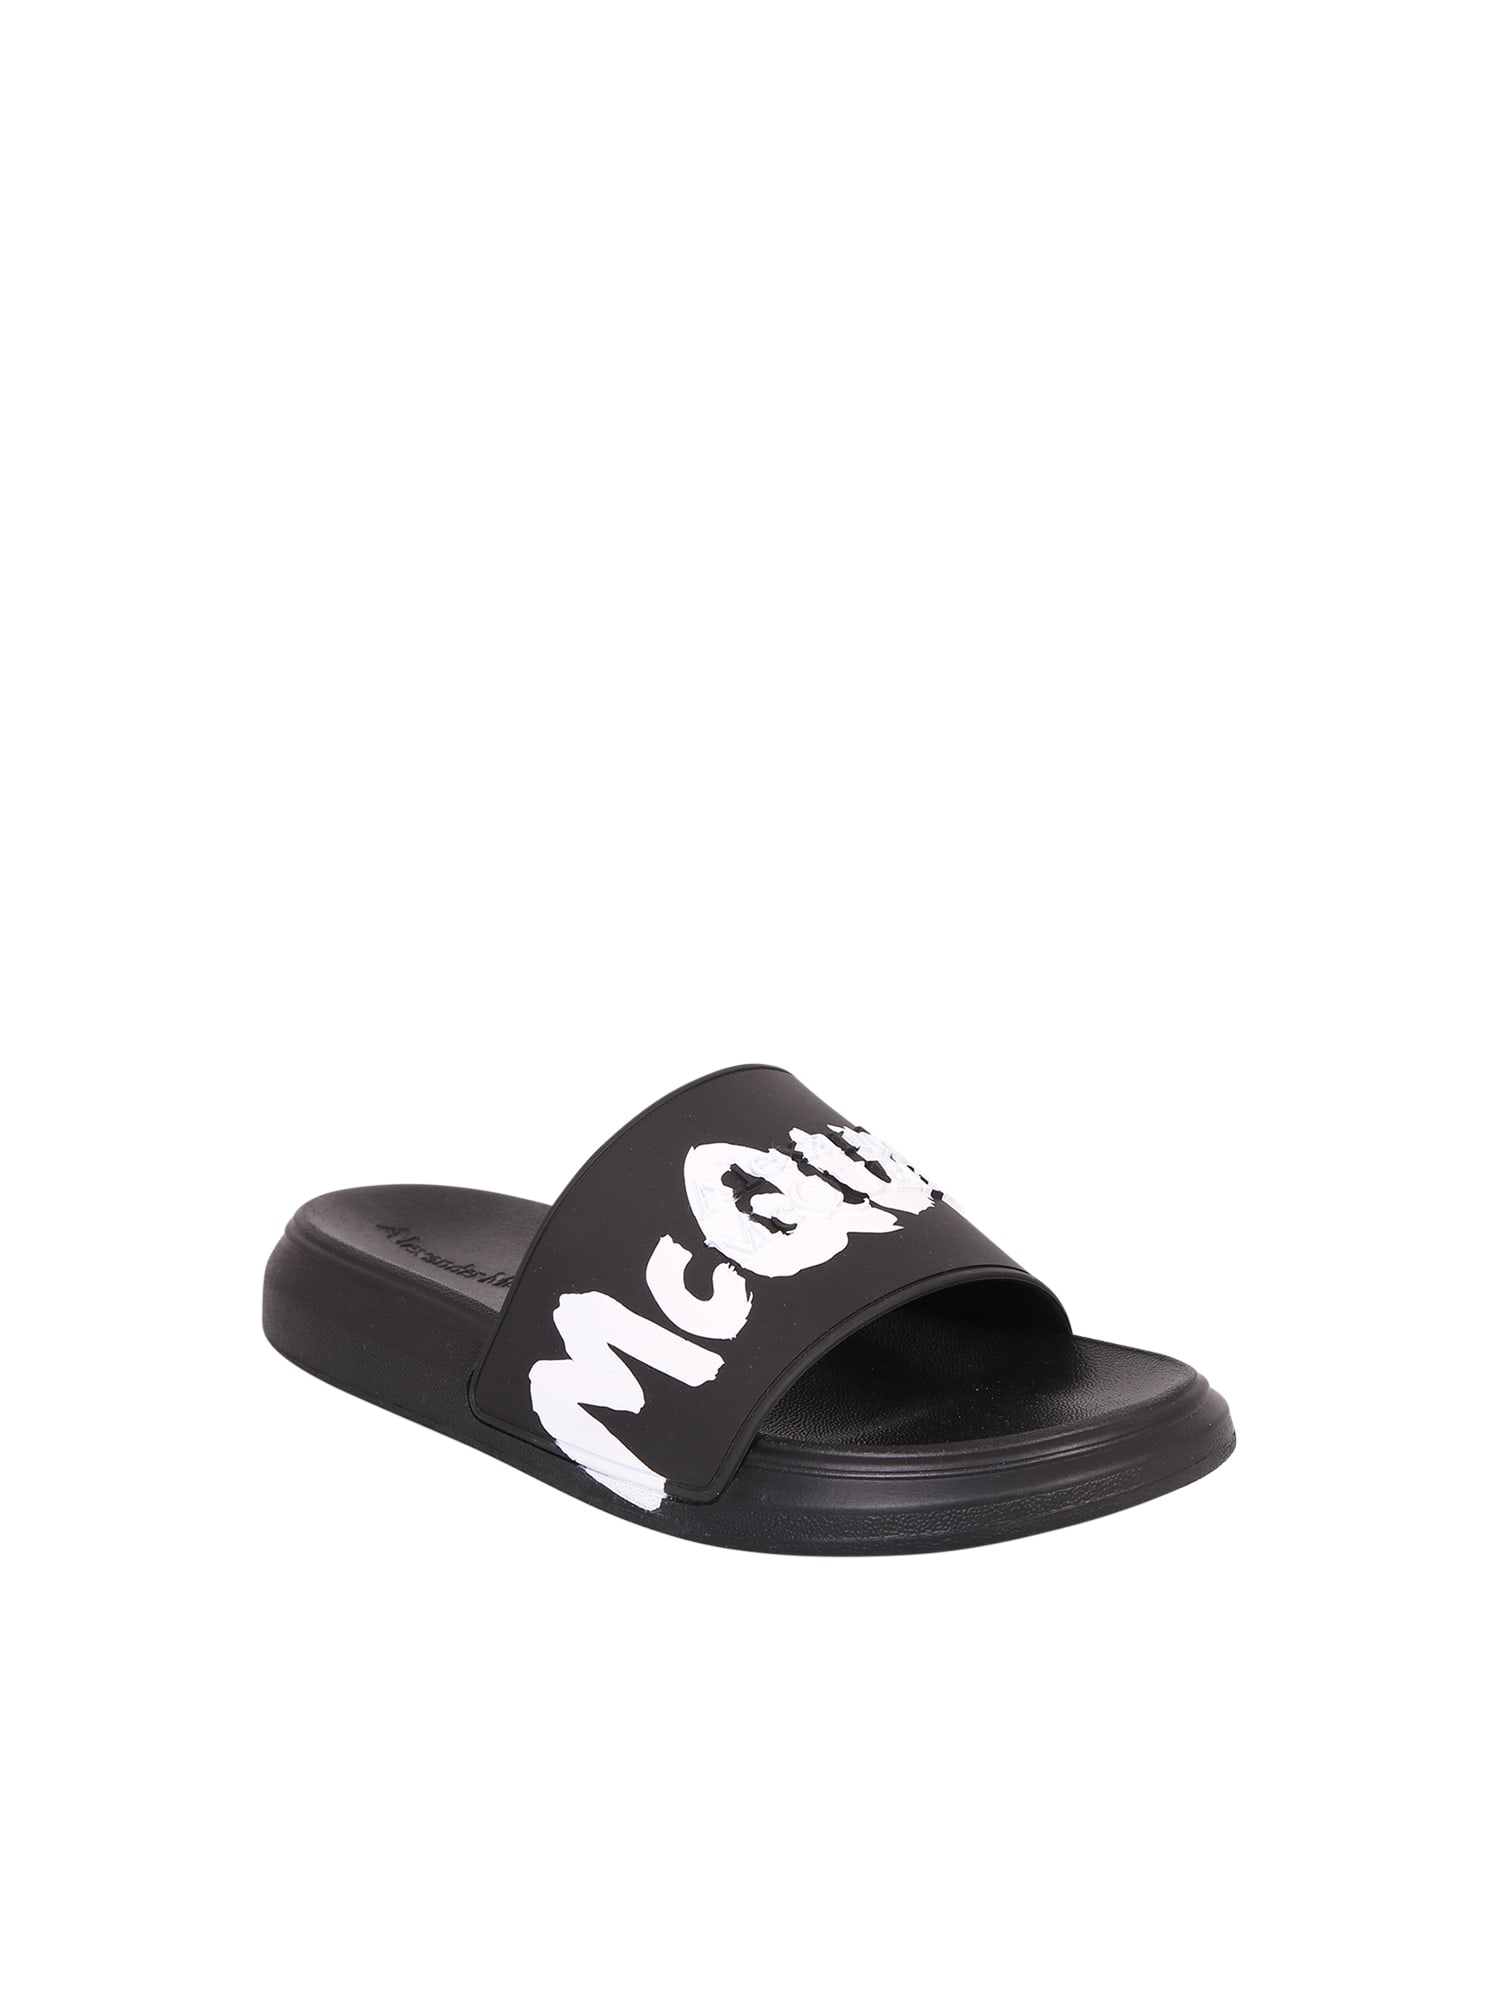 Shop Alexander Mcqueen Black Slide Sandals